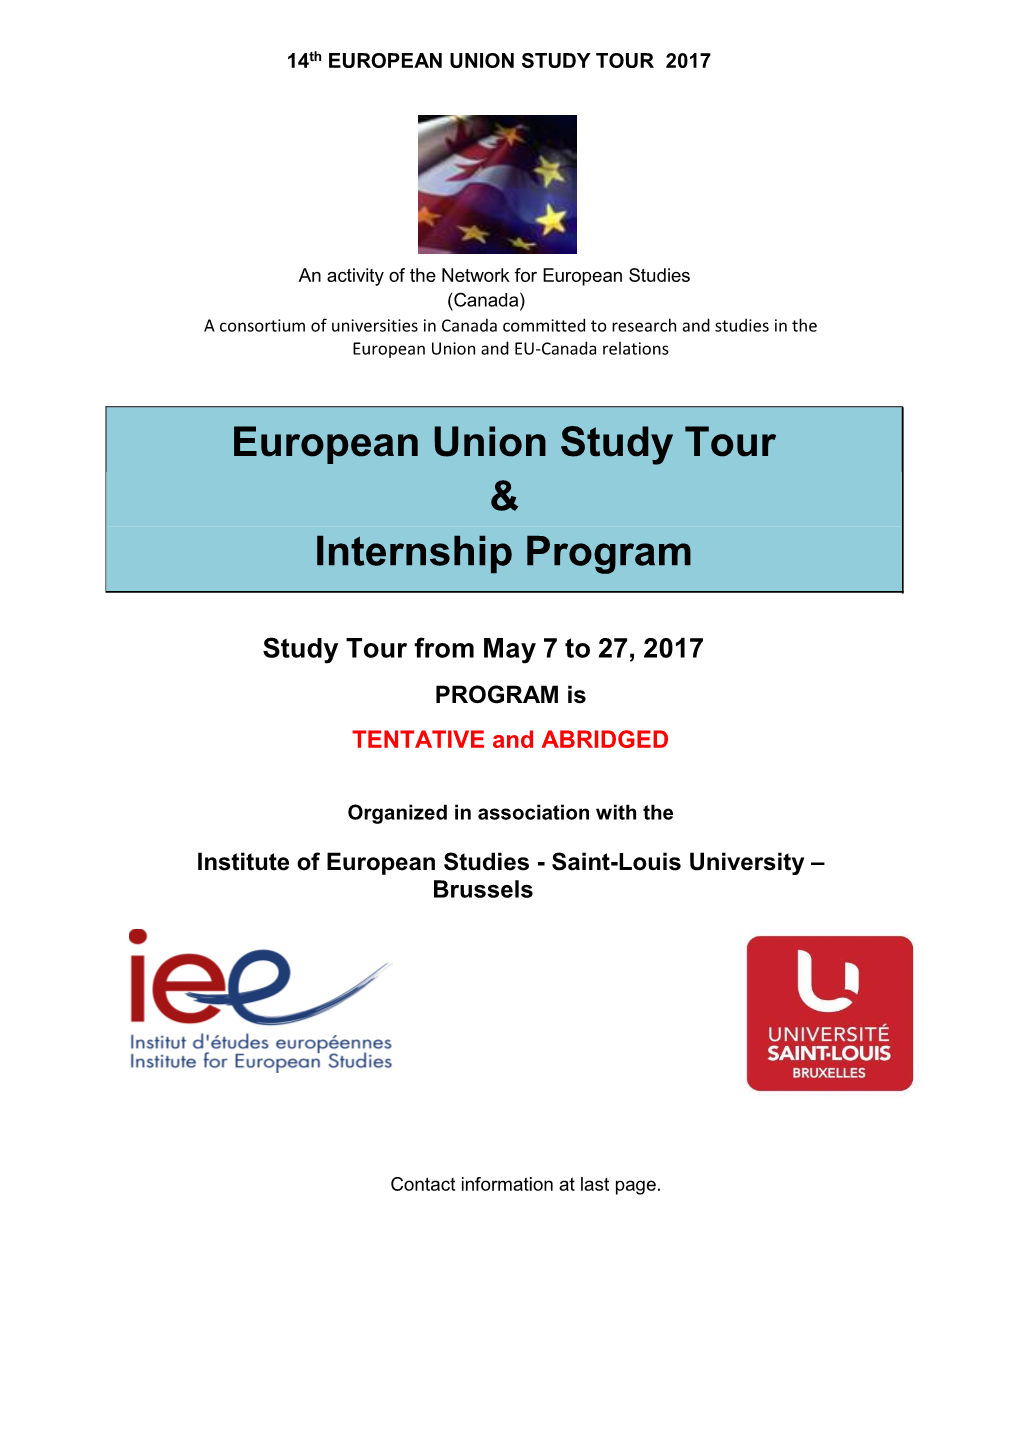 European Union Study Tour & Internship Program